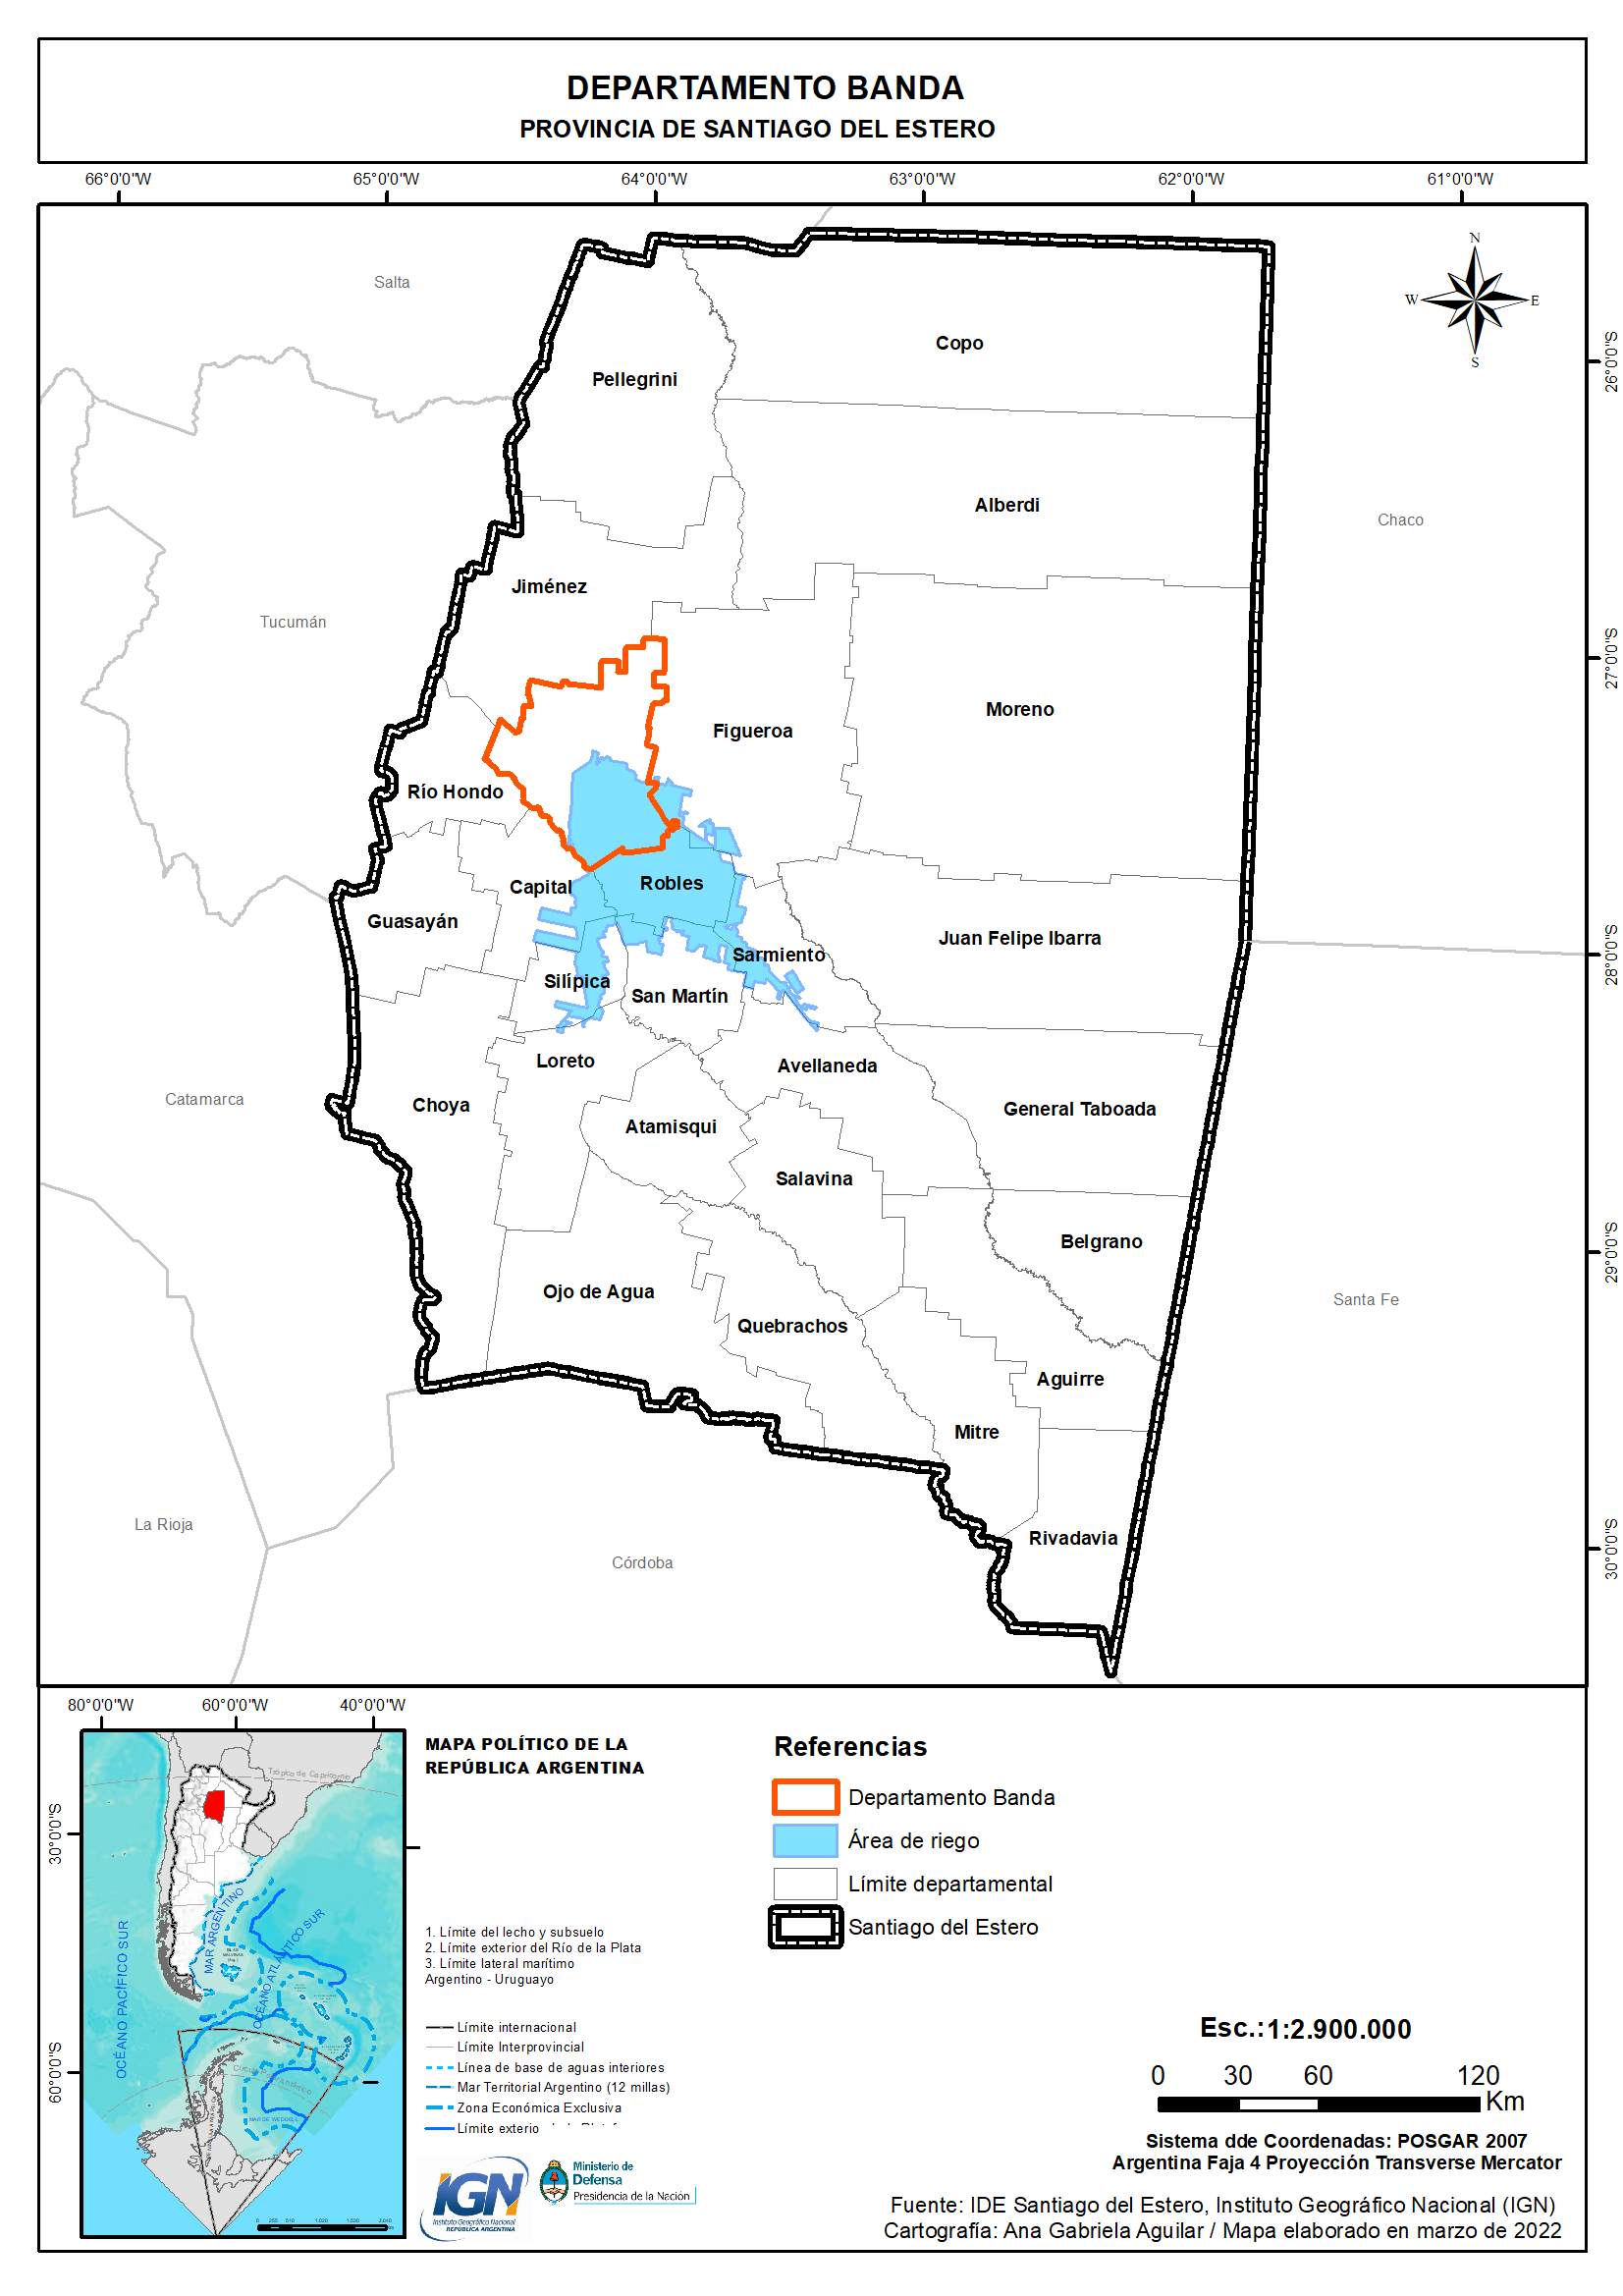 Provincia de Santiago del Estero: identificación del departamento Banda y el área de riego